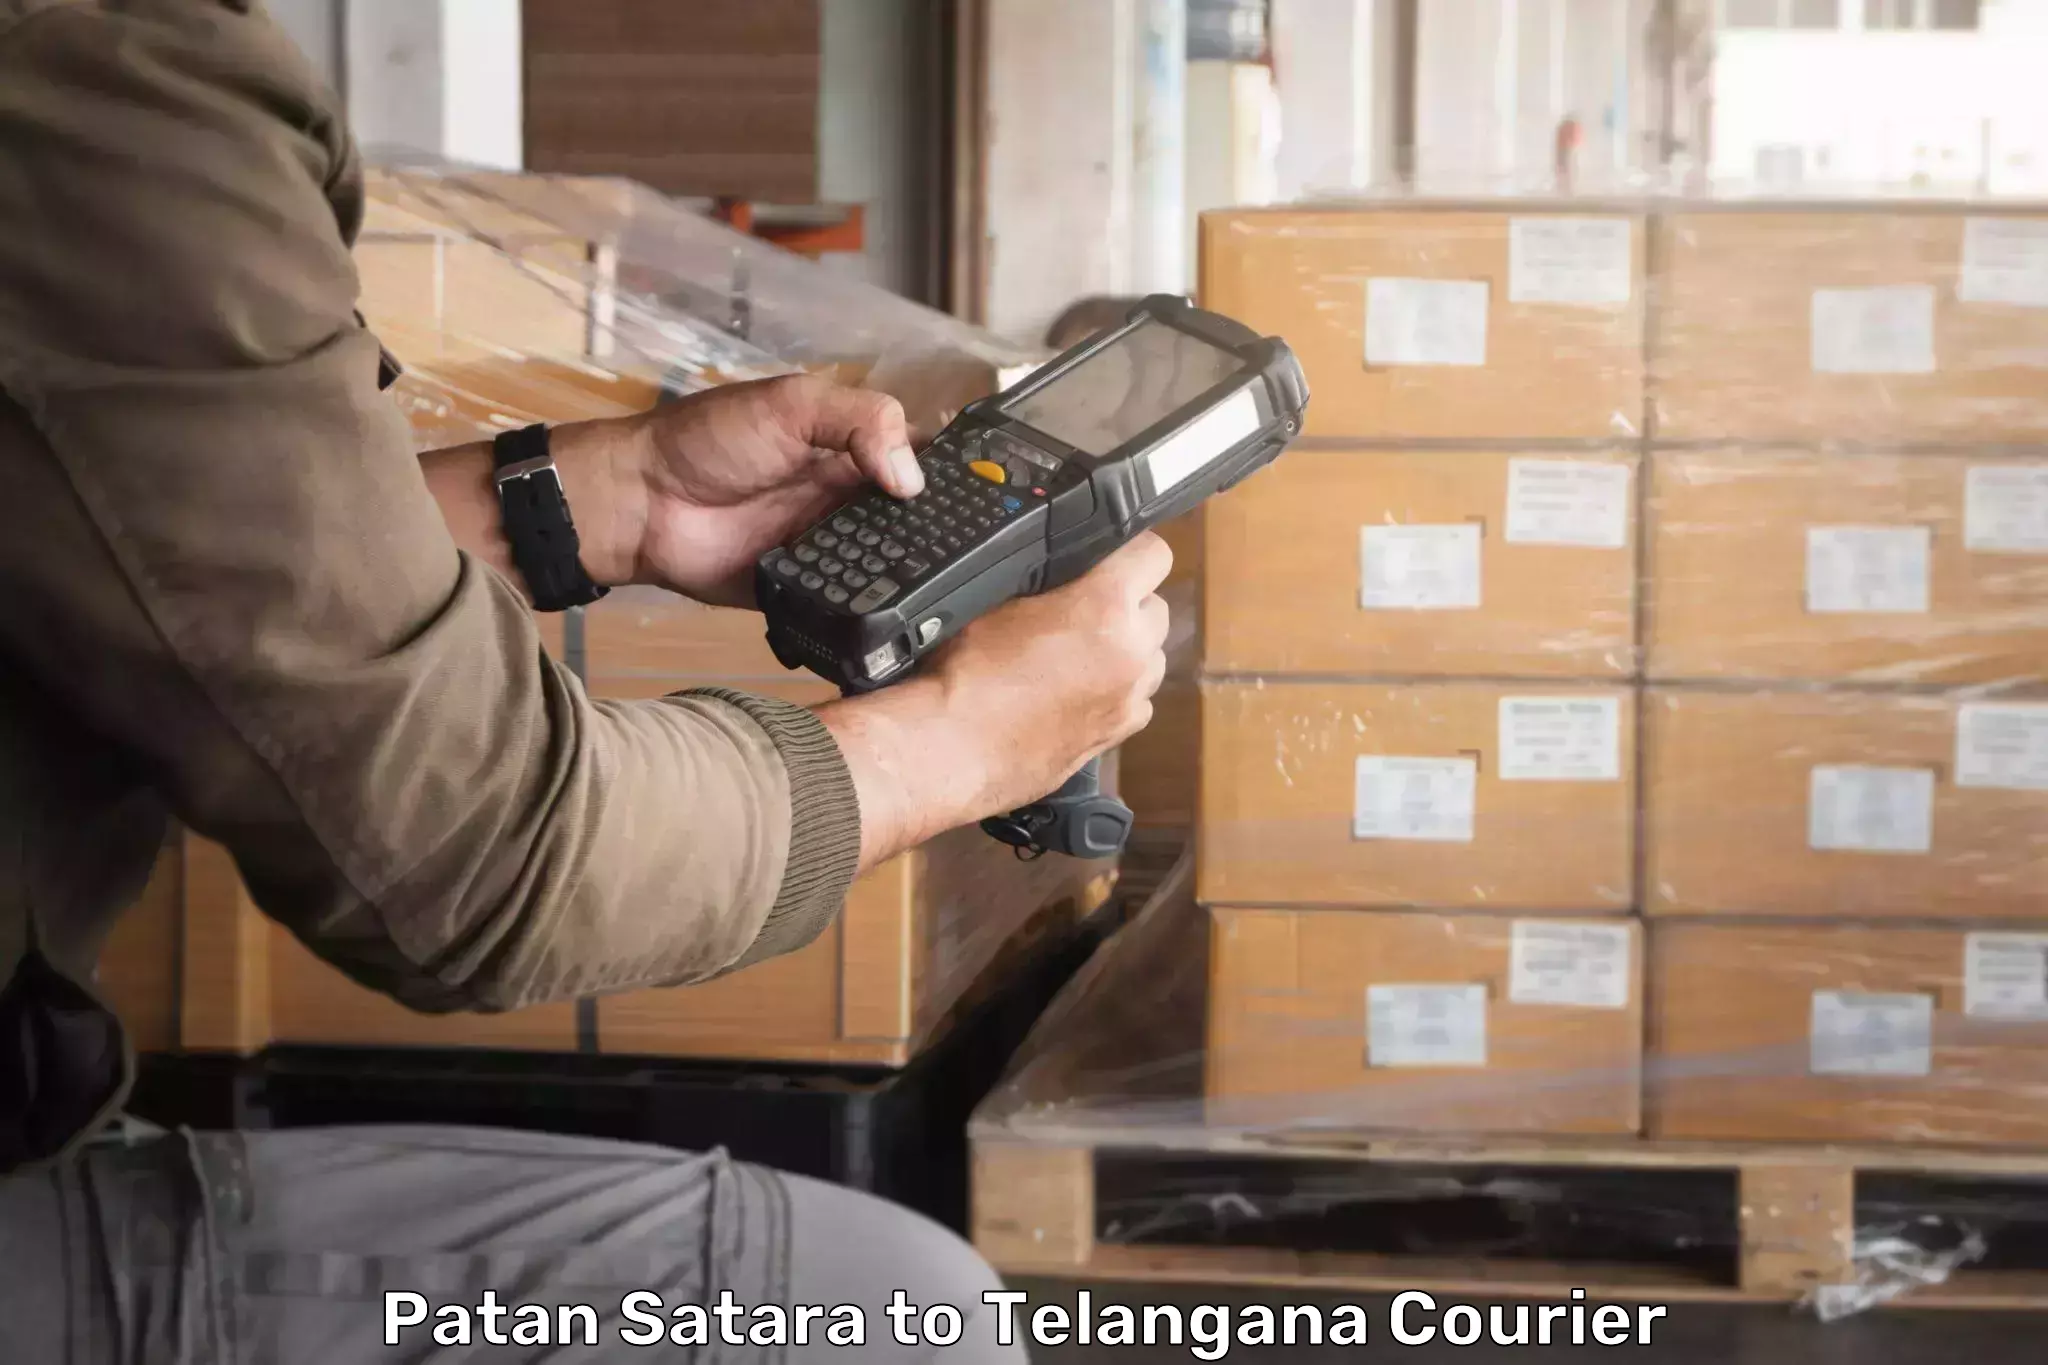 Business shipping needs Patan Satara to Sikanderguda